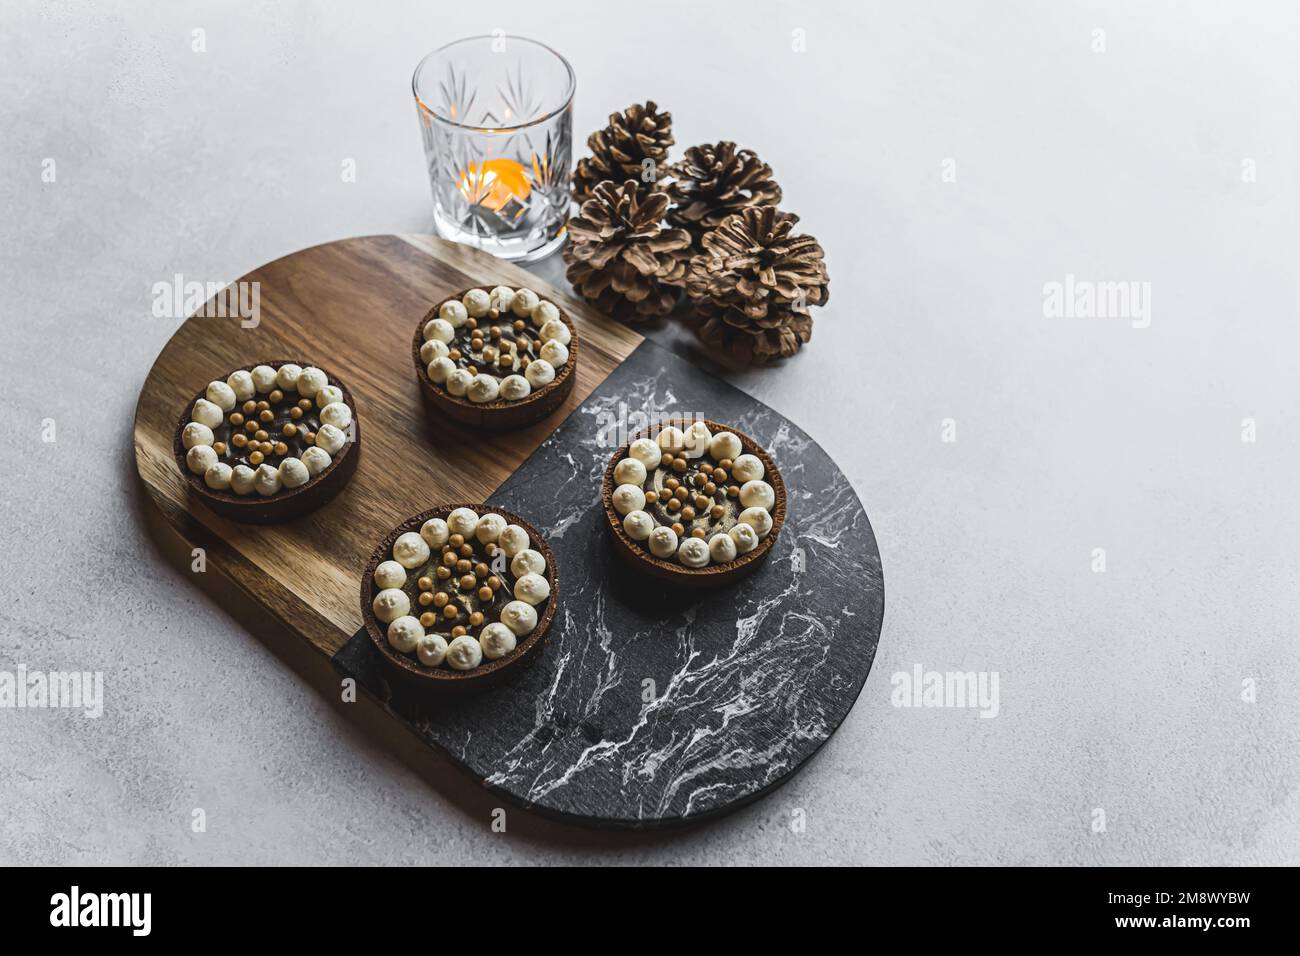 Vier Mini-Schokoladen-Desserttörtchen, serviert auf einem Holz- und Steintablett auf einem Steintisch mit Kerze und dekorativen Kiefernzapfen. Festliche Winterdesserts. Horizontale Aufnahme. Hochwertiges Foto Stockfoto